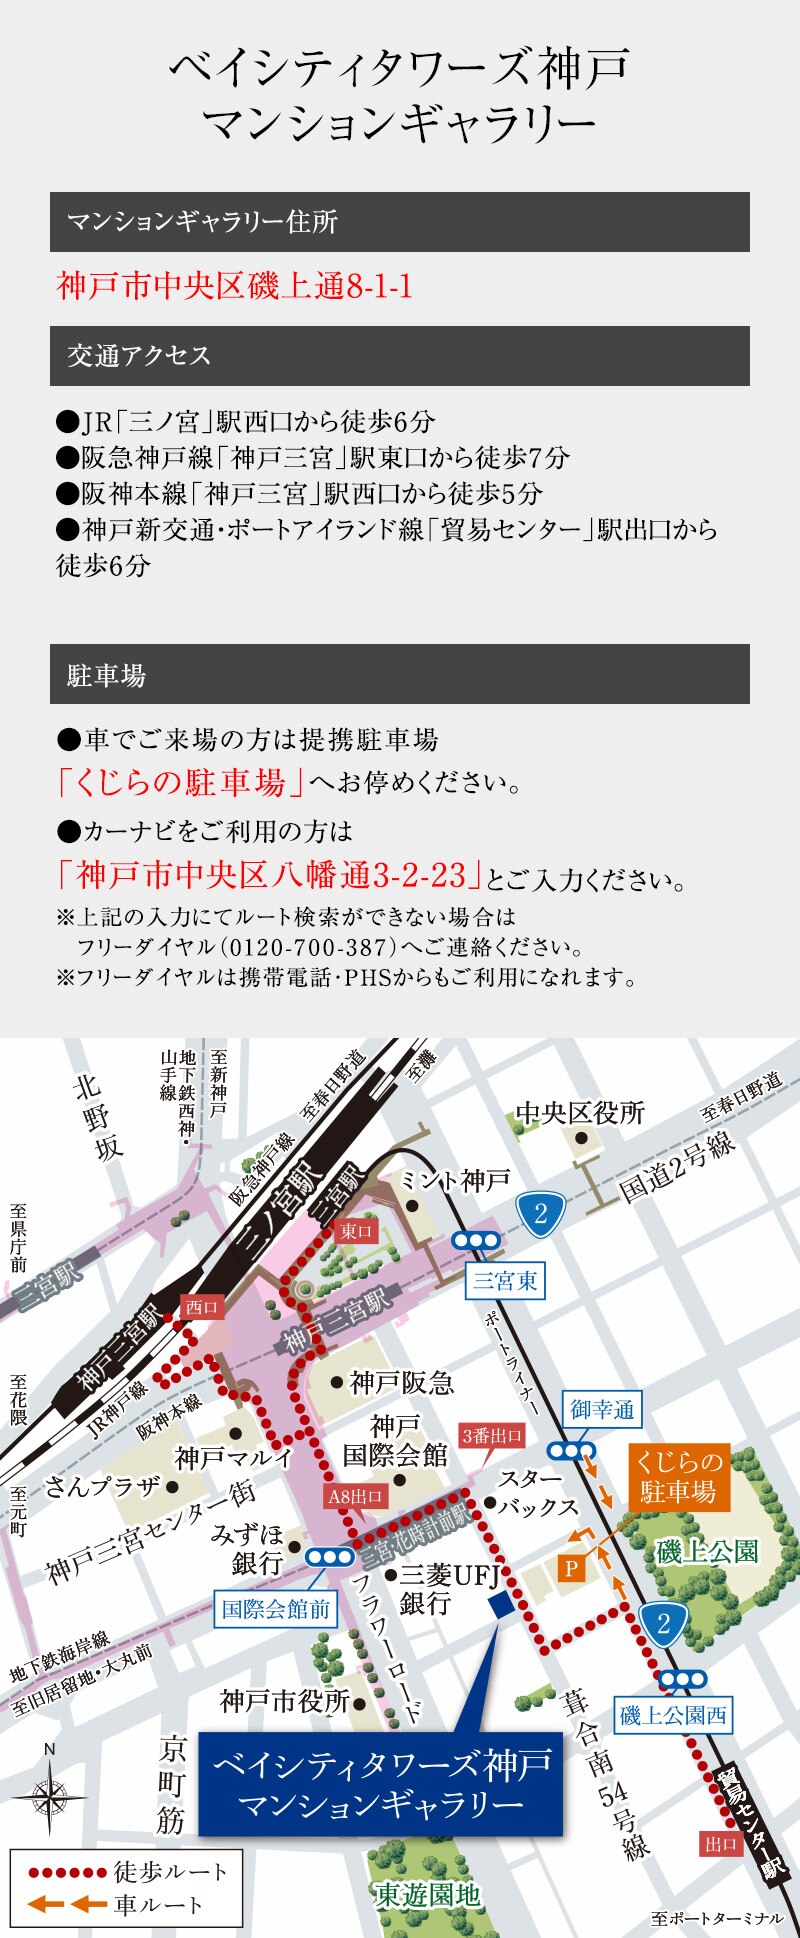 マンションギャラリー 現地案内図 公式 ベイシティタワーズ神戸 神戸の新築マンション 住友不動産